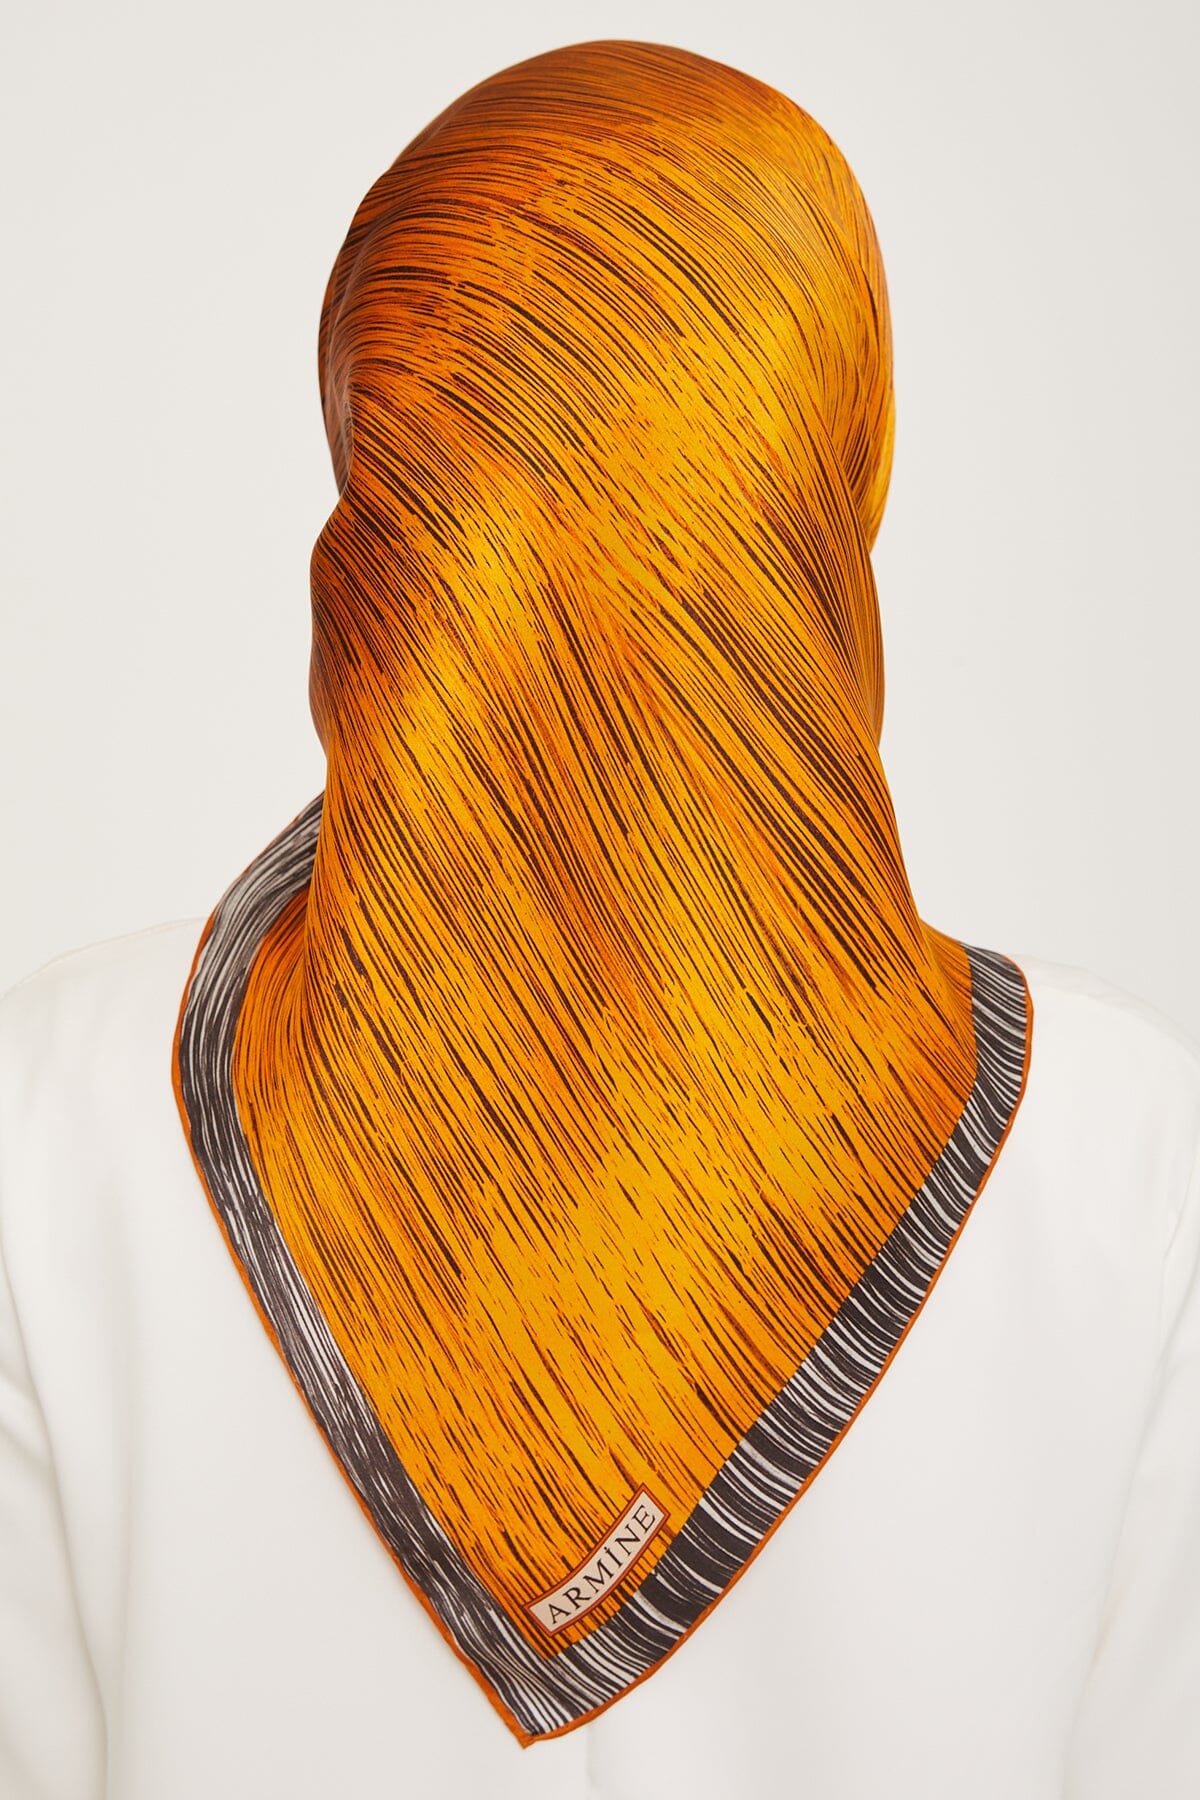 Armine Myers Silk Hair Wrap 